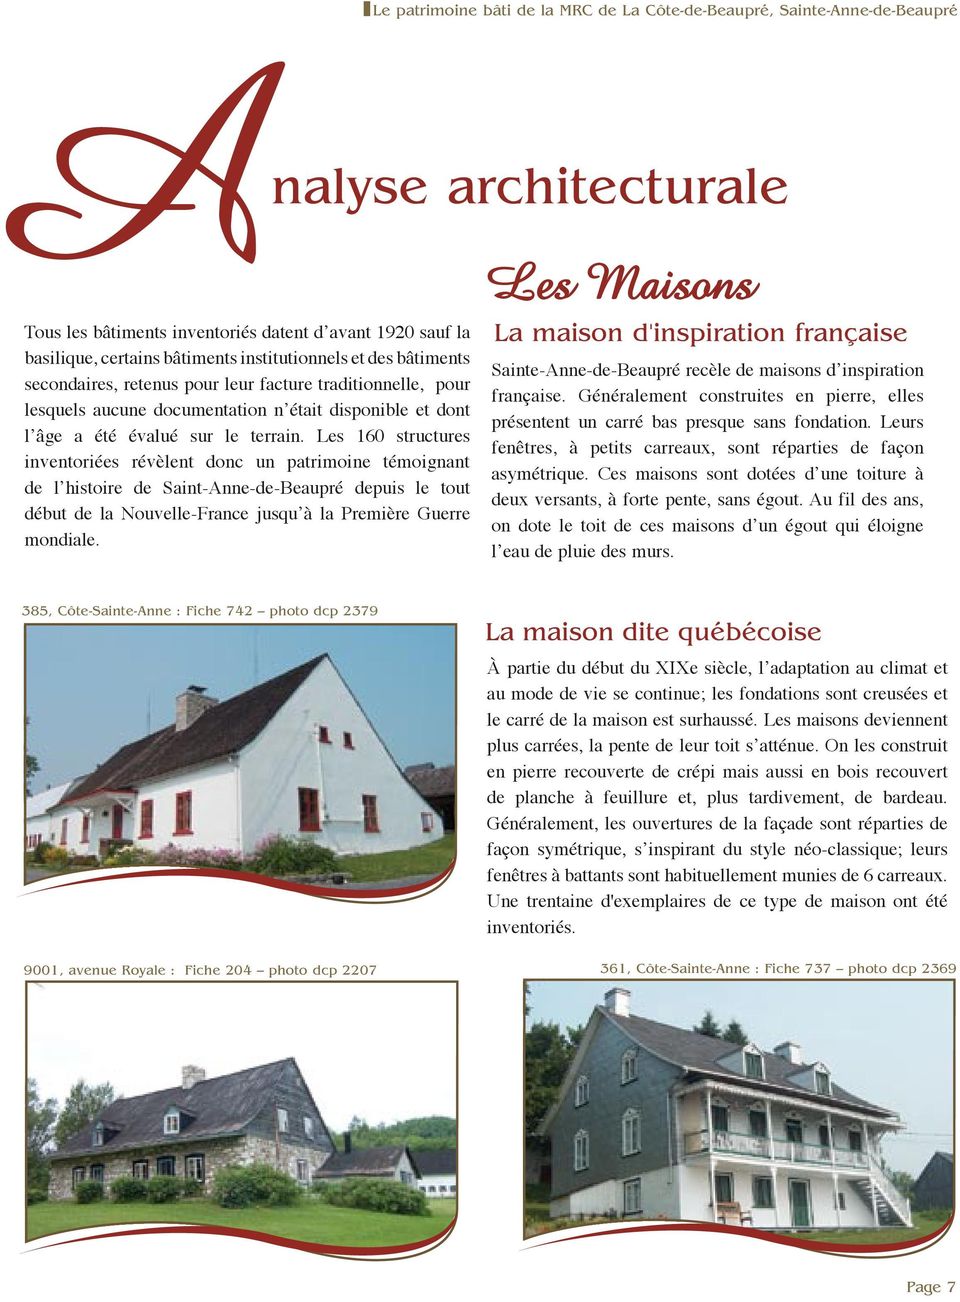 Les 160 structures inventoriées révèlent donc un patrimoine témoignant de lʼhistoire de Saint-Anne-de-Beaupré depuis le tout début de la Nouvelle-France jusquʼà la Première Guerre mondiale.